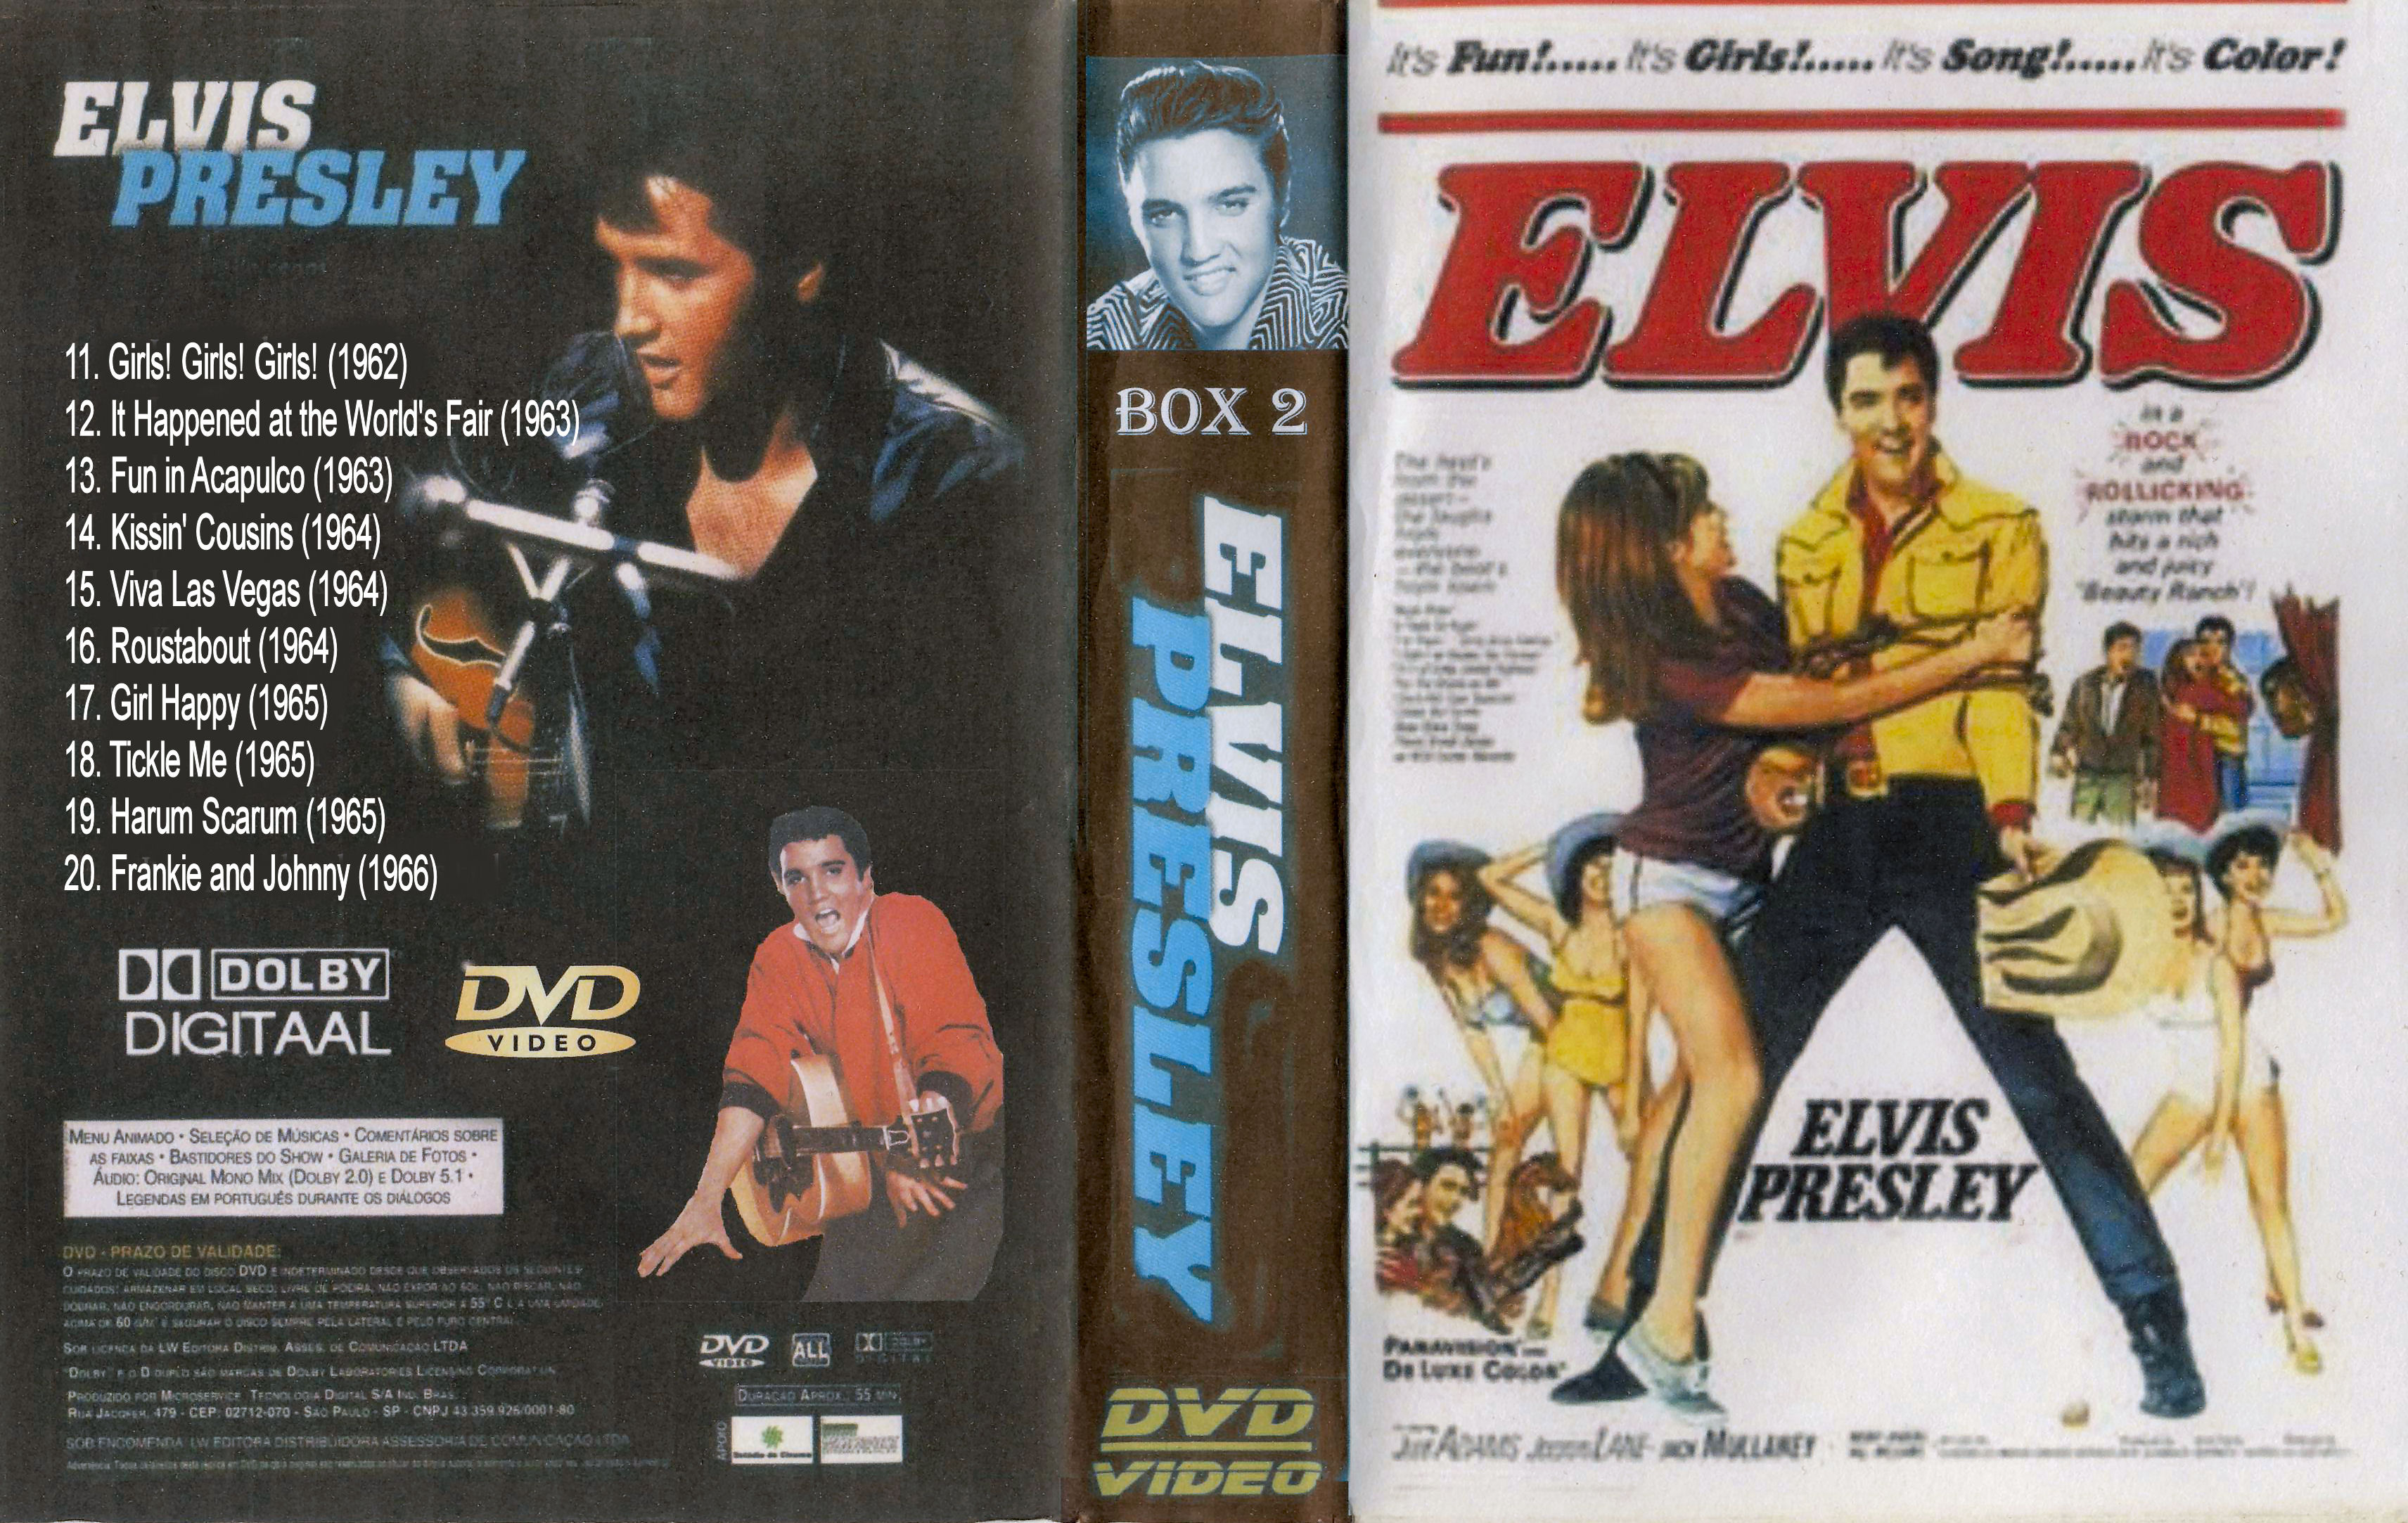 Elvis presley Collectie ( It Happened at the World's Fair (1963) Dvd 12van 31